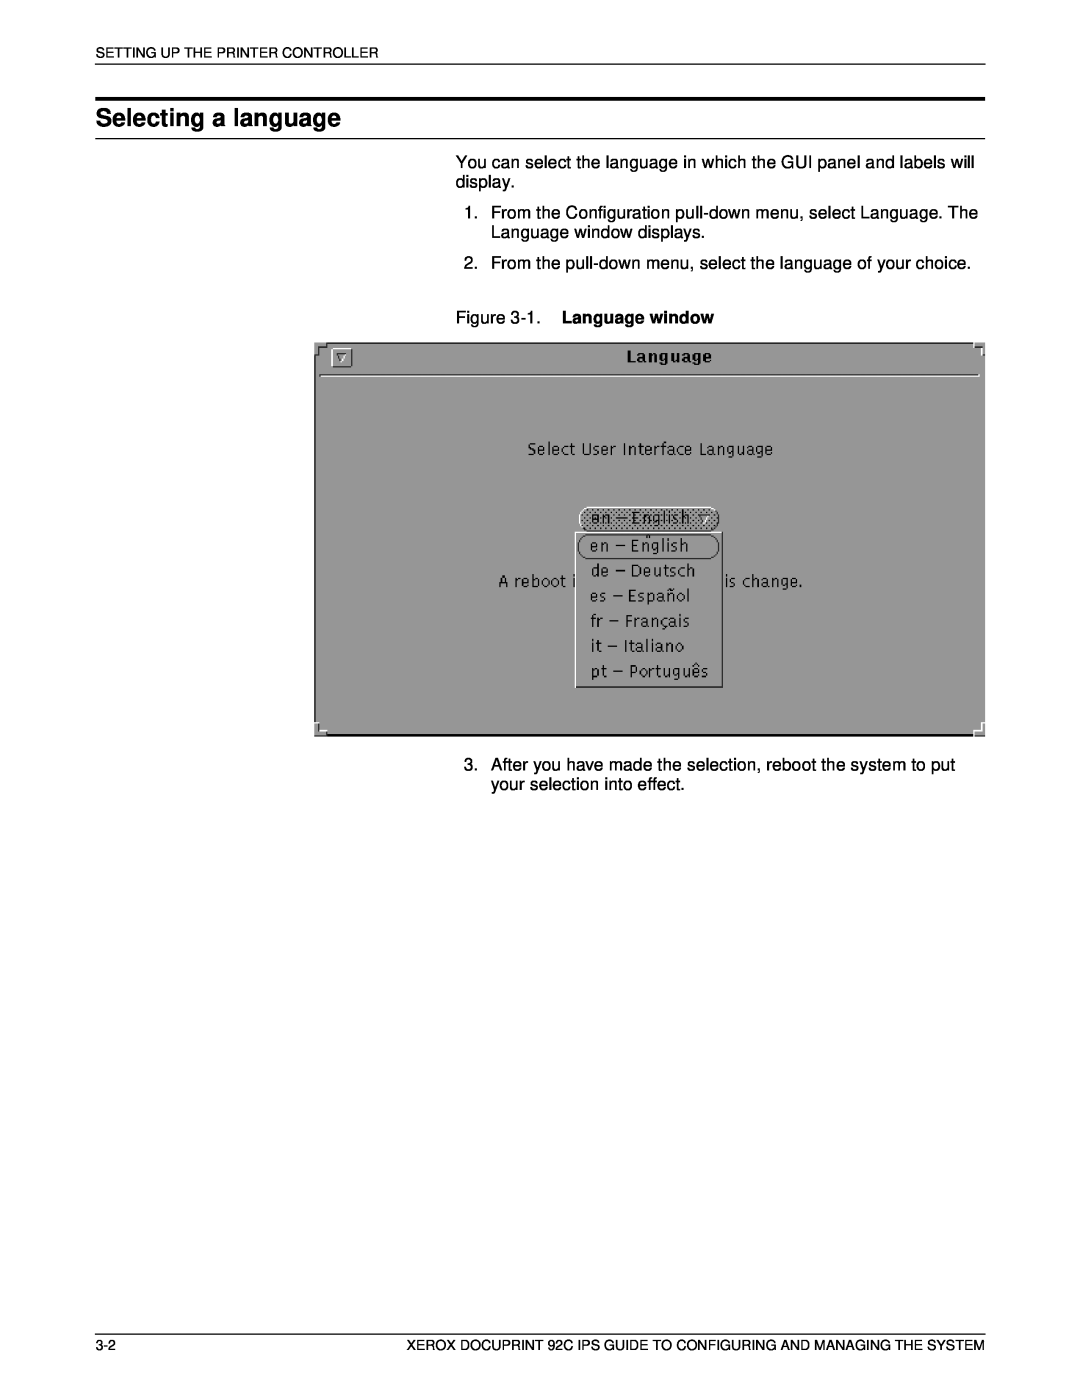 Xerox 92C IPS manual Selecting a language, 1. Language window 